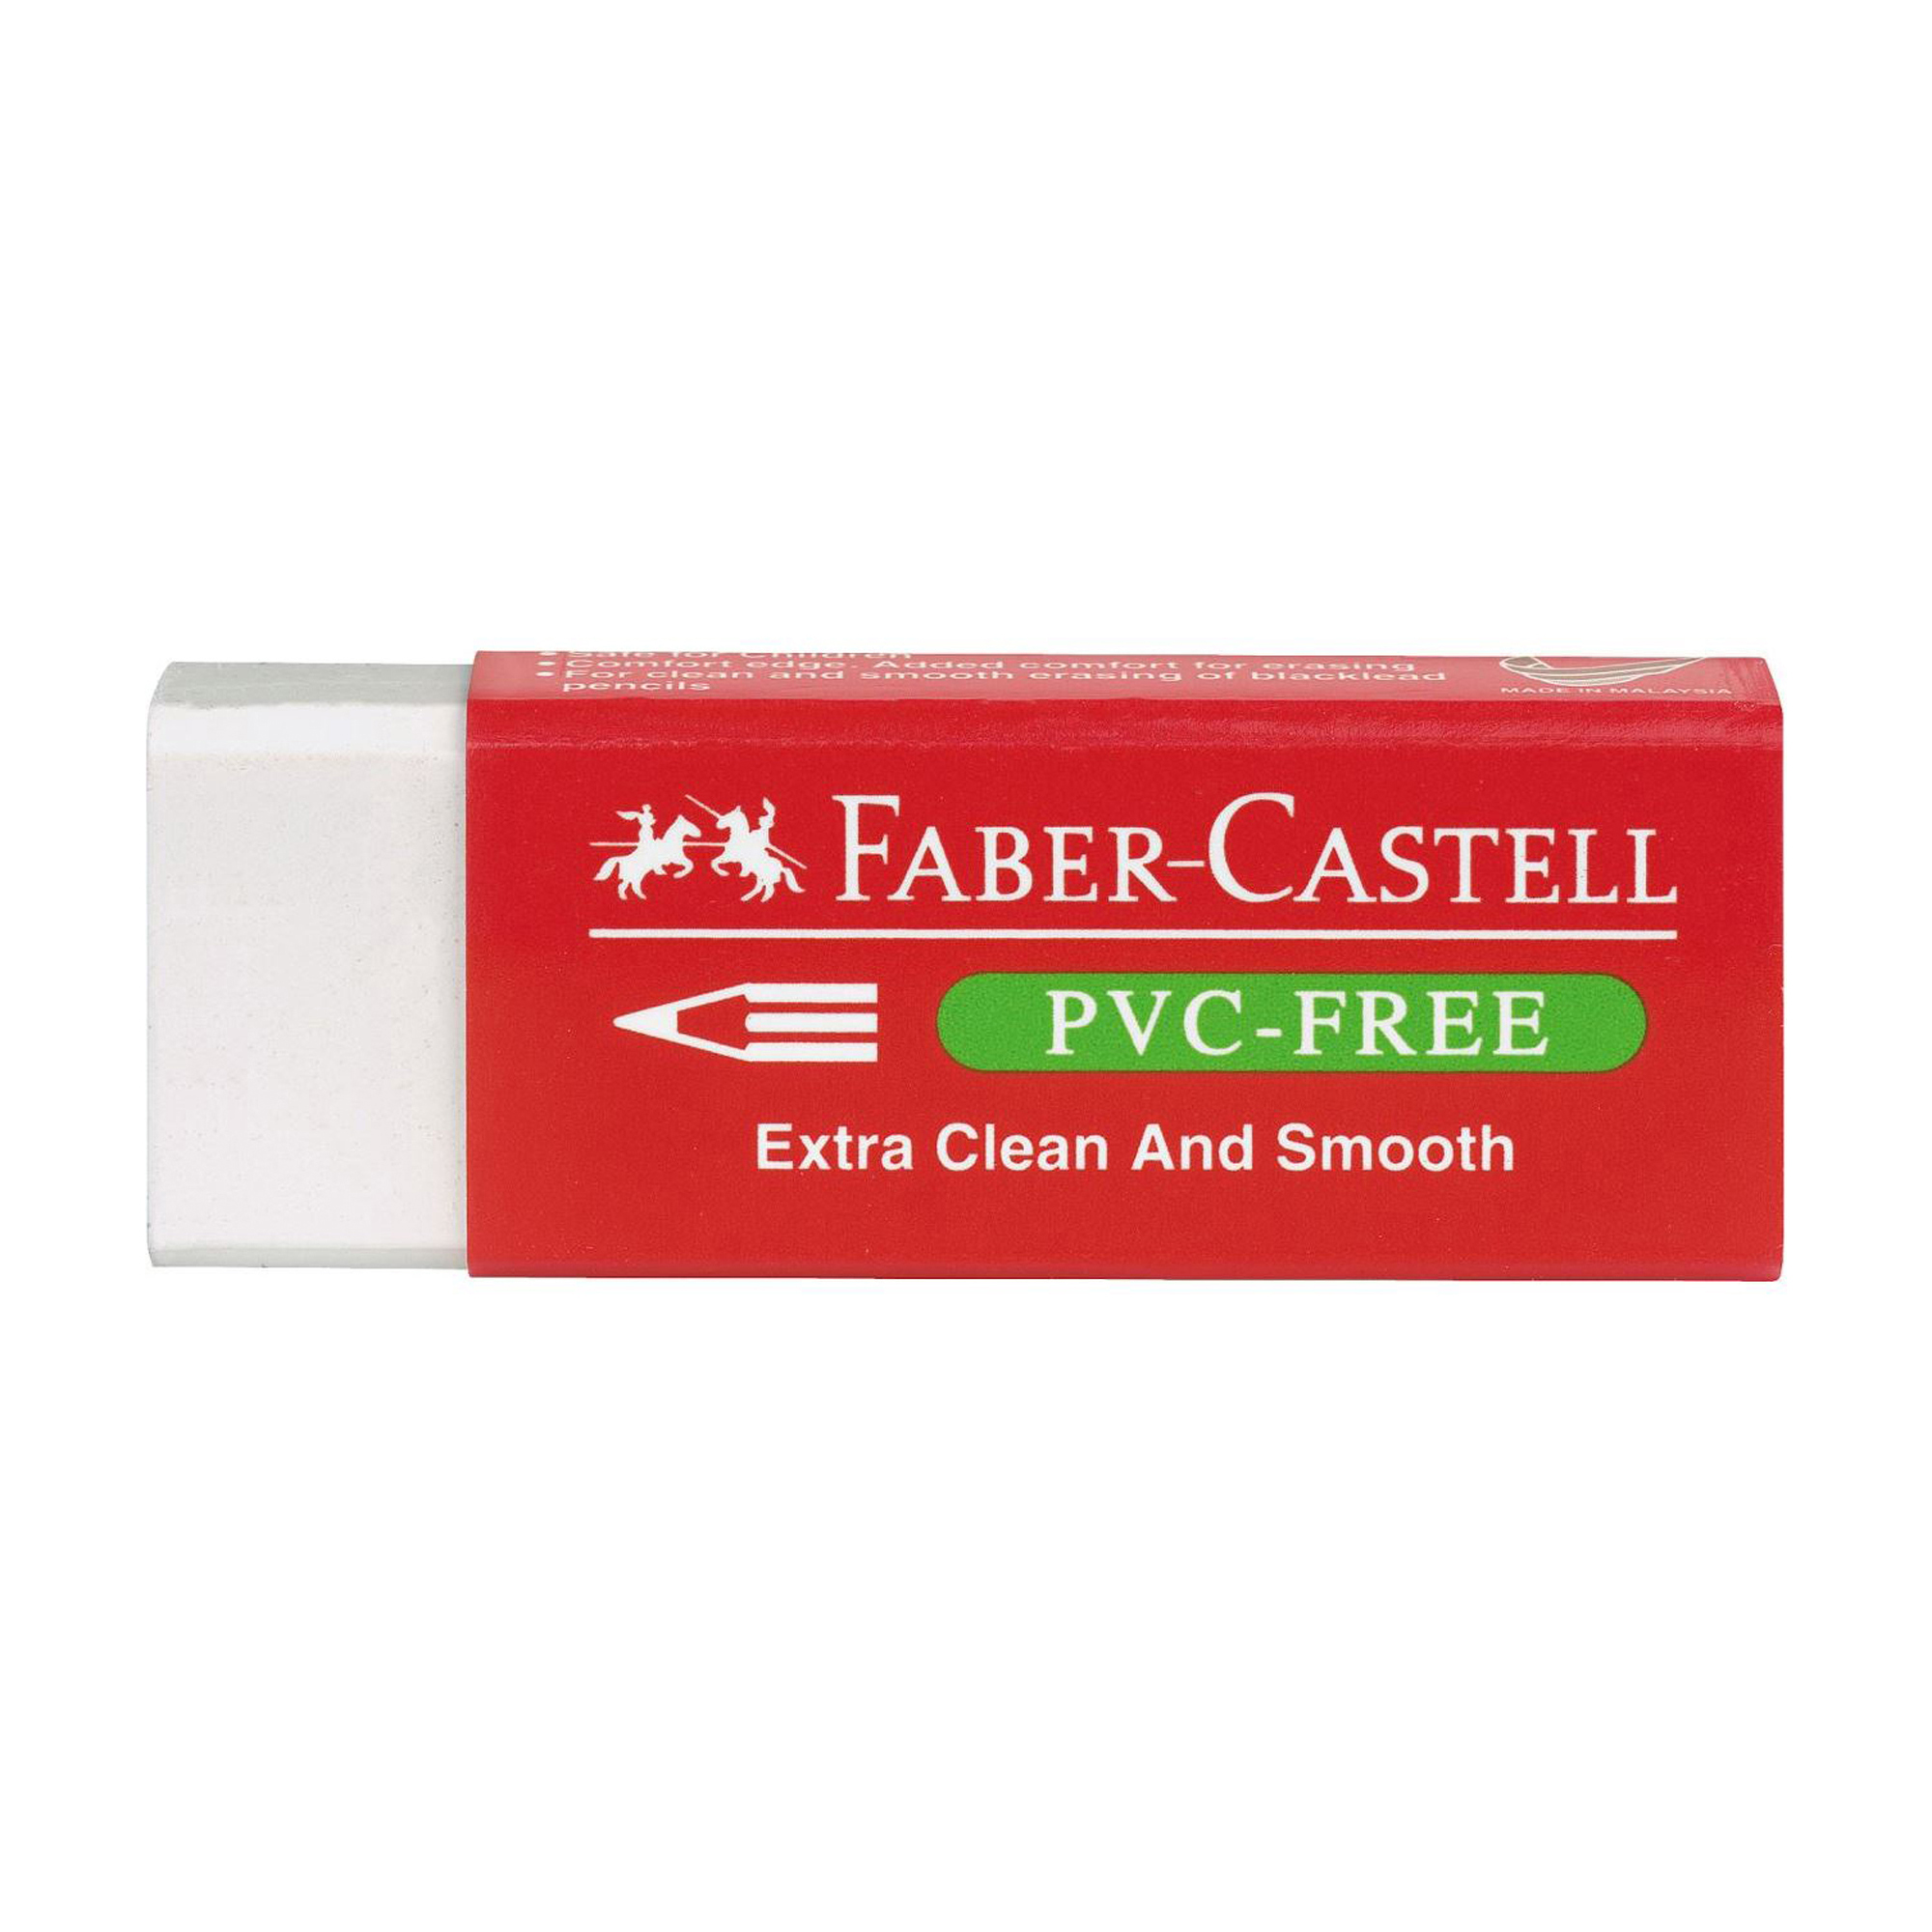 Gomma bianca per matita - 7095 Faber Castell - conf. 20 pezzi su